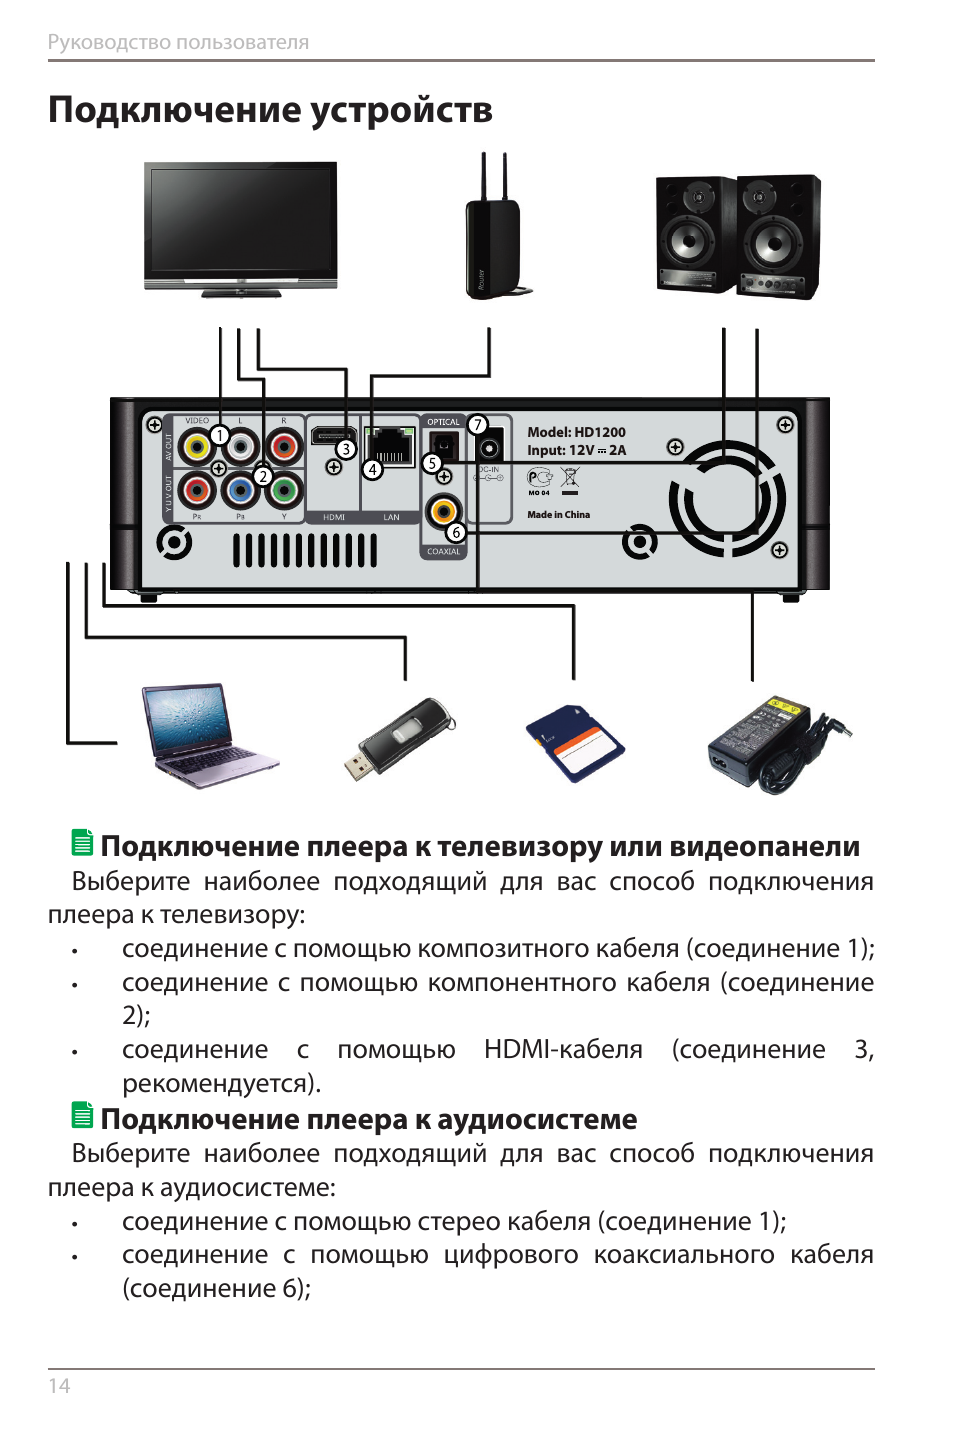 Как подключить телефон к старому телевизору - порядок действий тарифкин.ру
как подключить телефон к старому телевизору - порядок действий